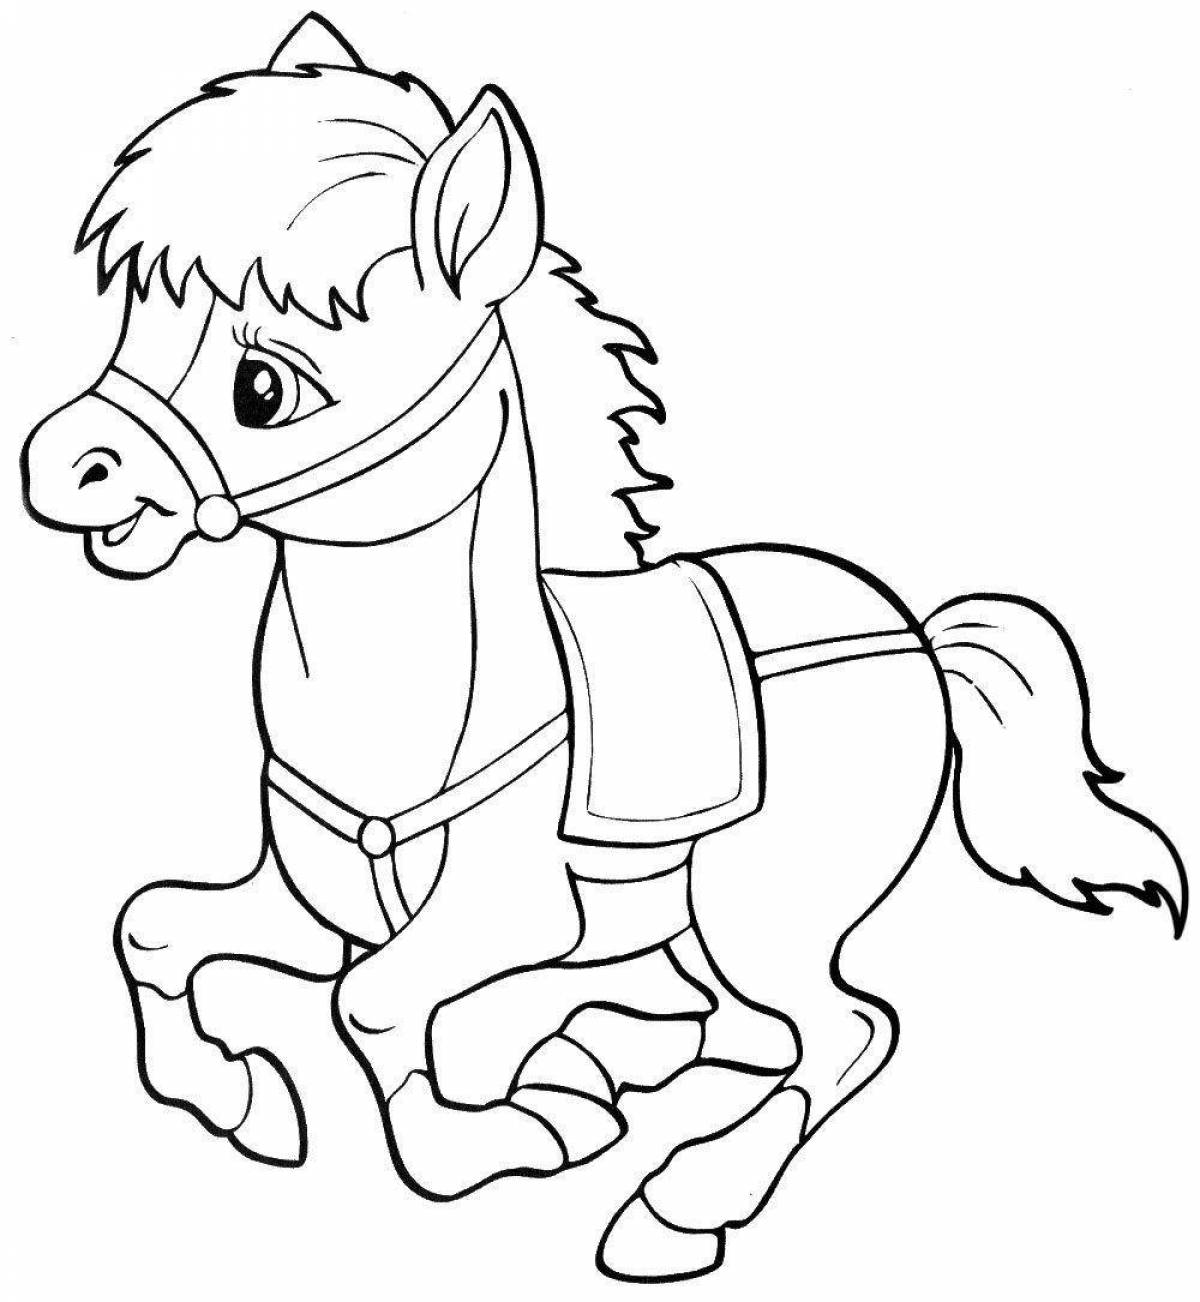 Увлекательная раскраска лошадка для детей 5-6 лет